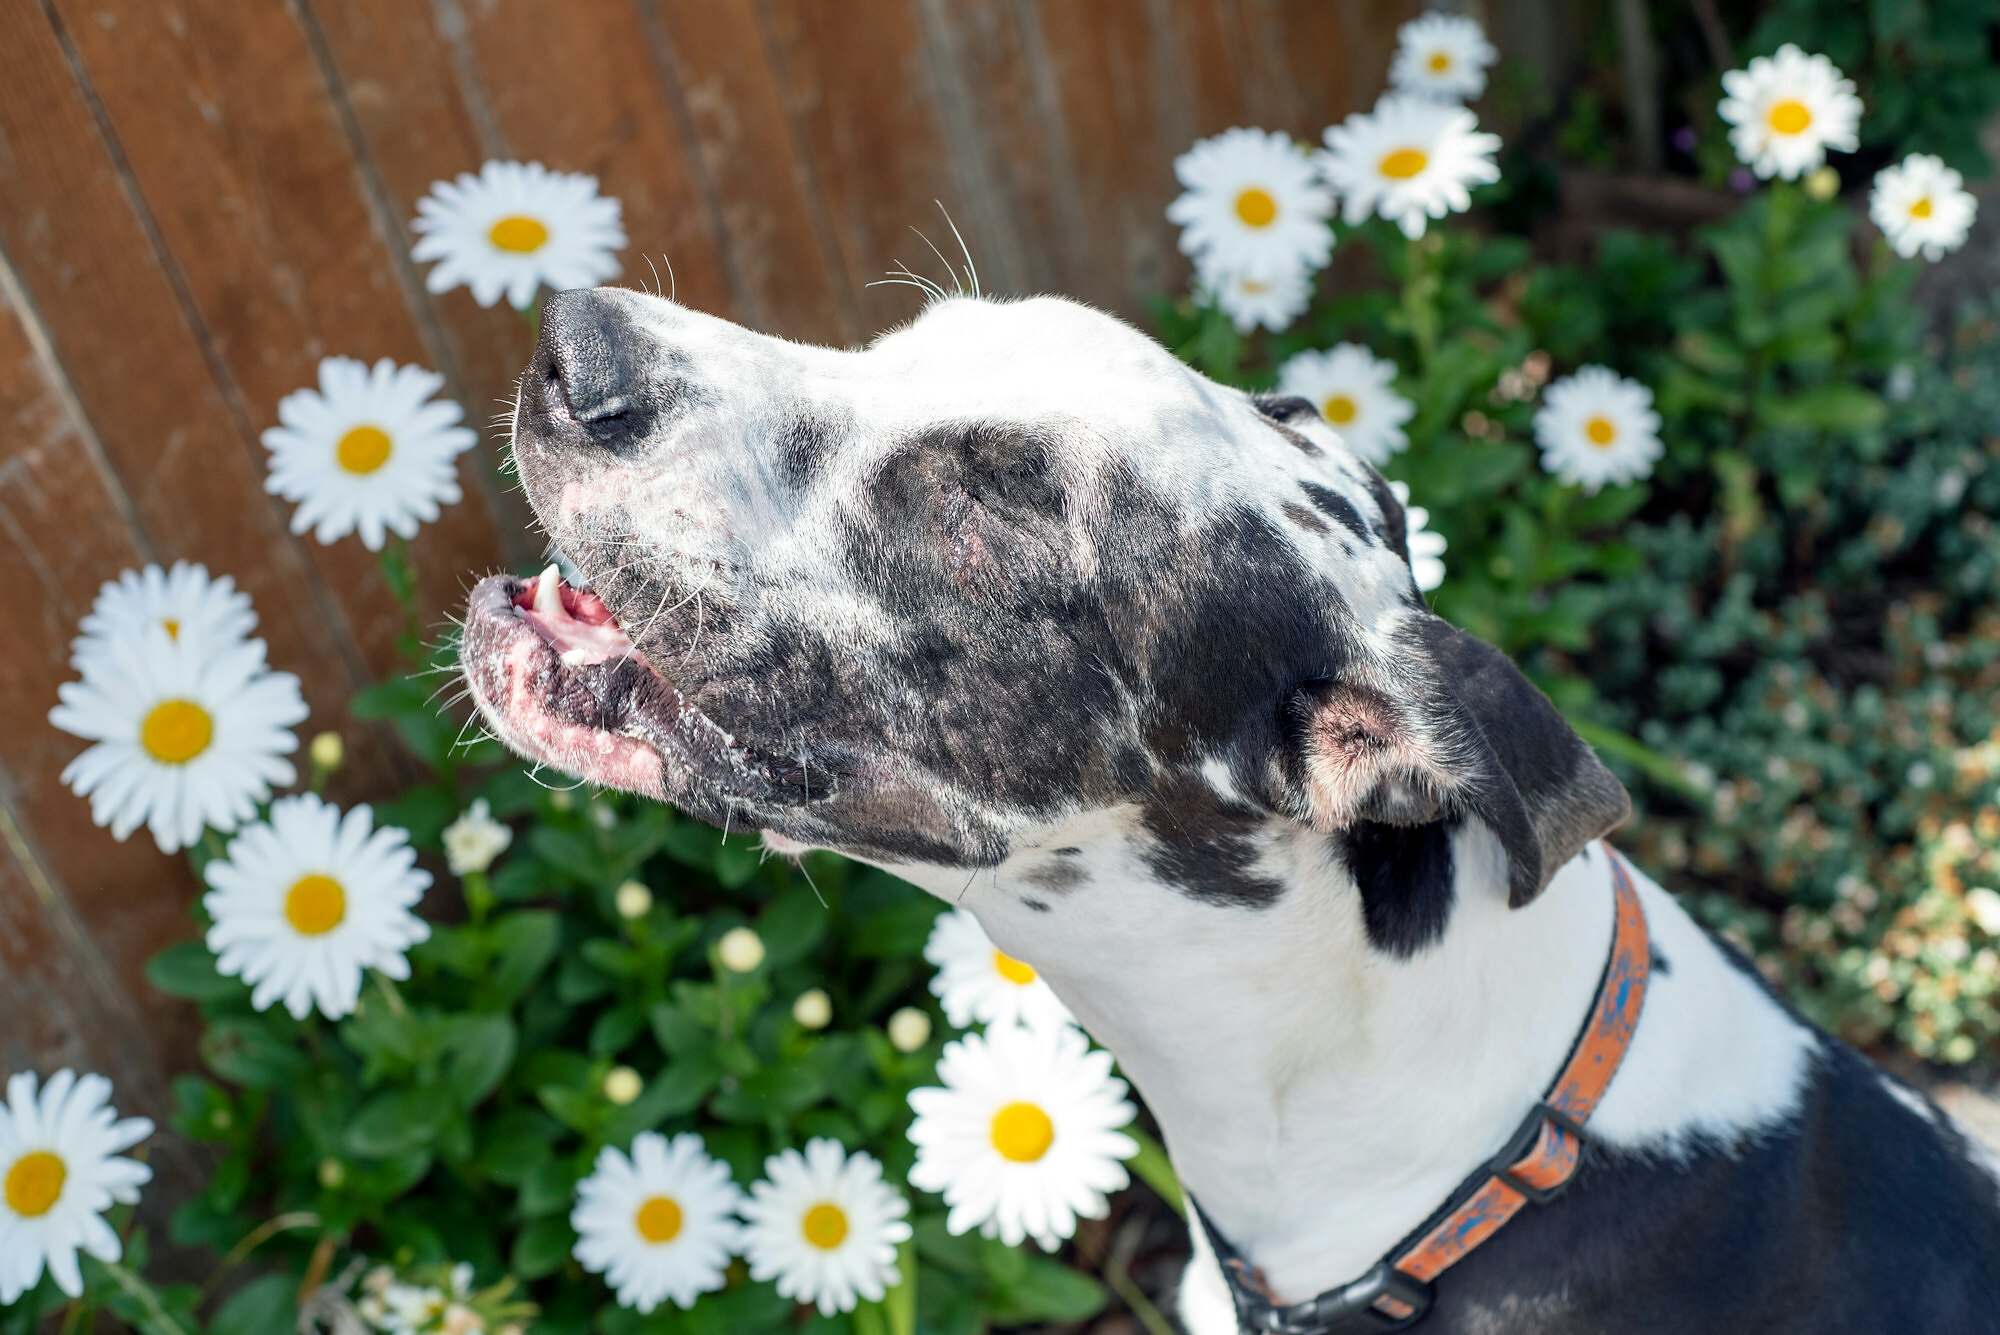 Sneezing dog in spring